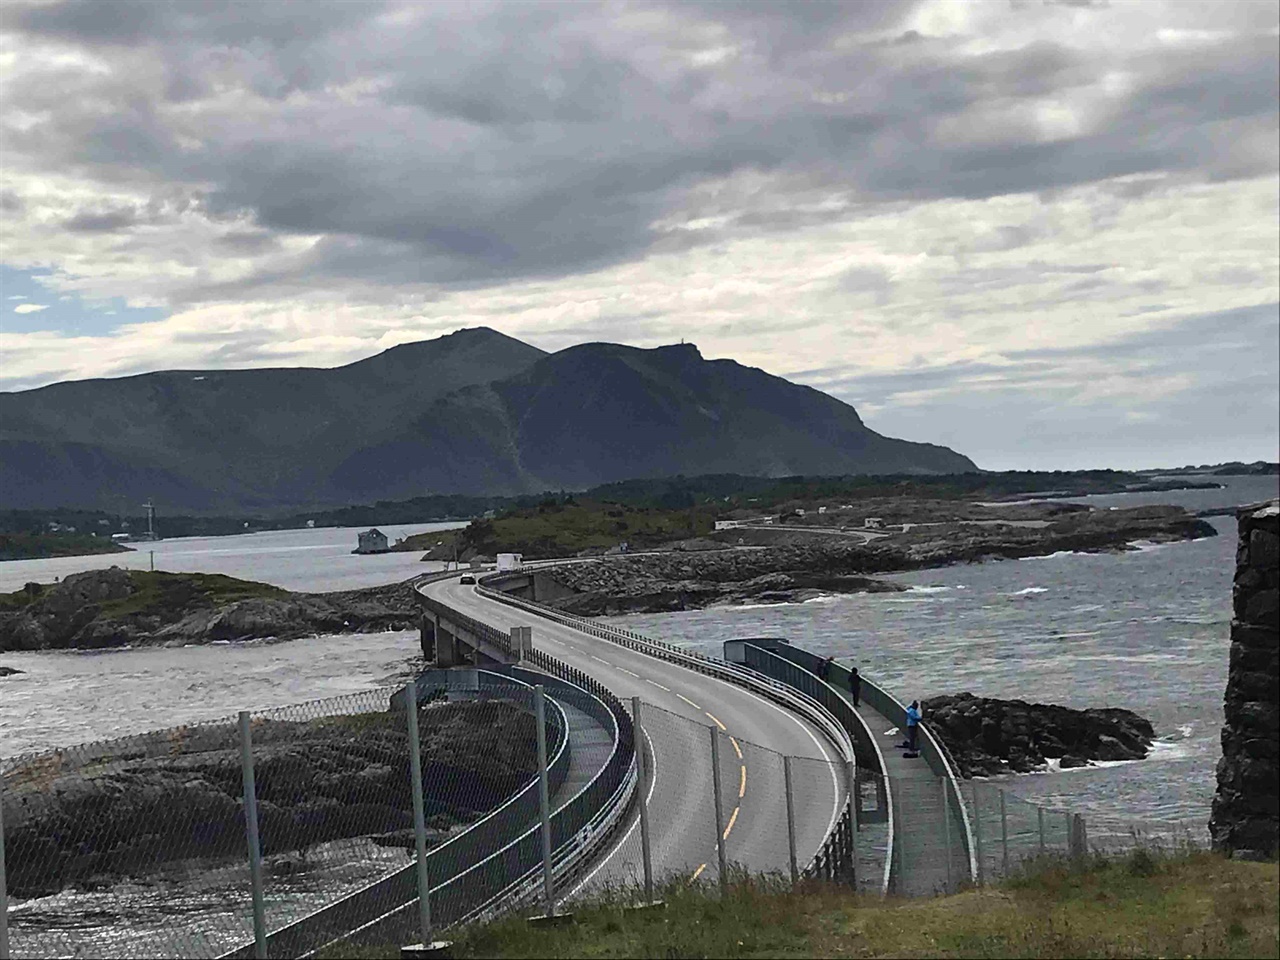 불안한 듯 보이는 노르웨이의 아틀란틱 오션 로드, 안전한 운전습관만이 편안함을 안겨주는 멋진 도로